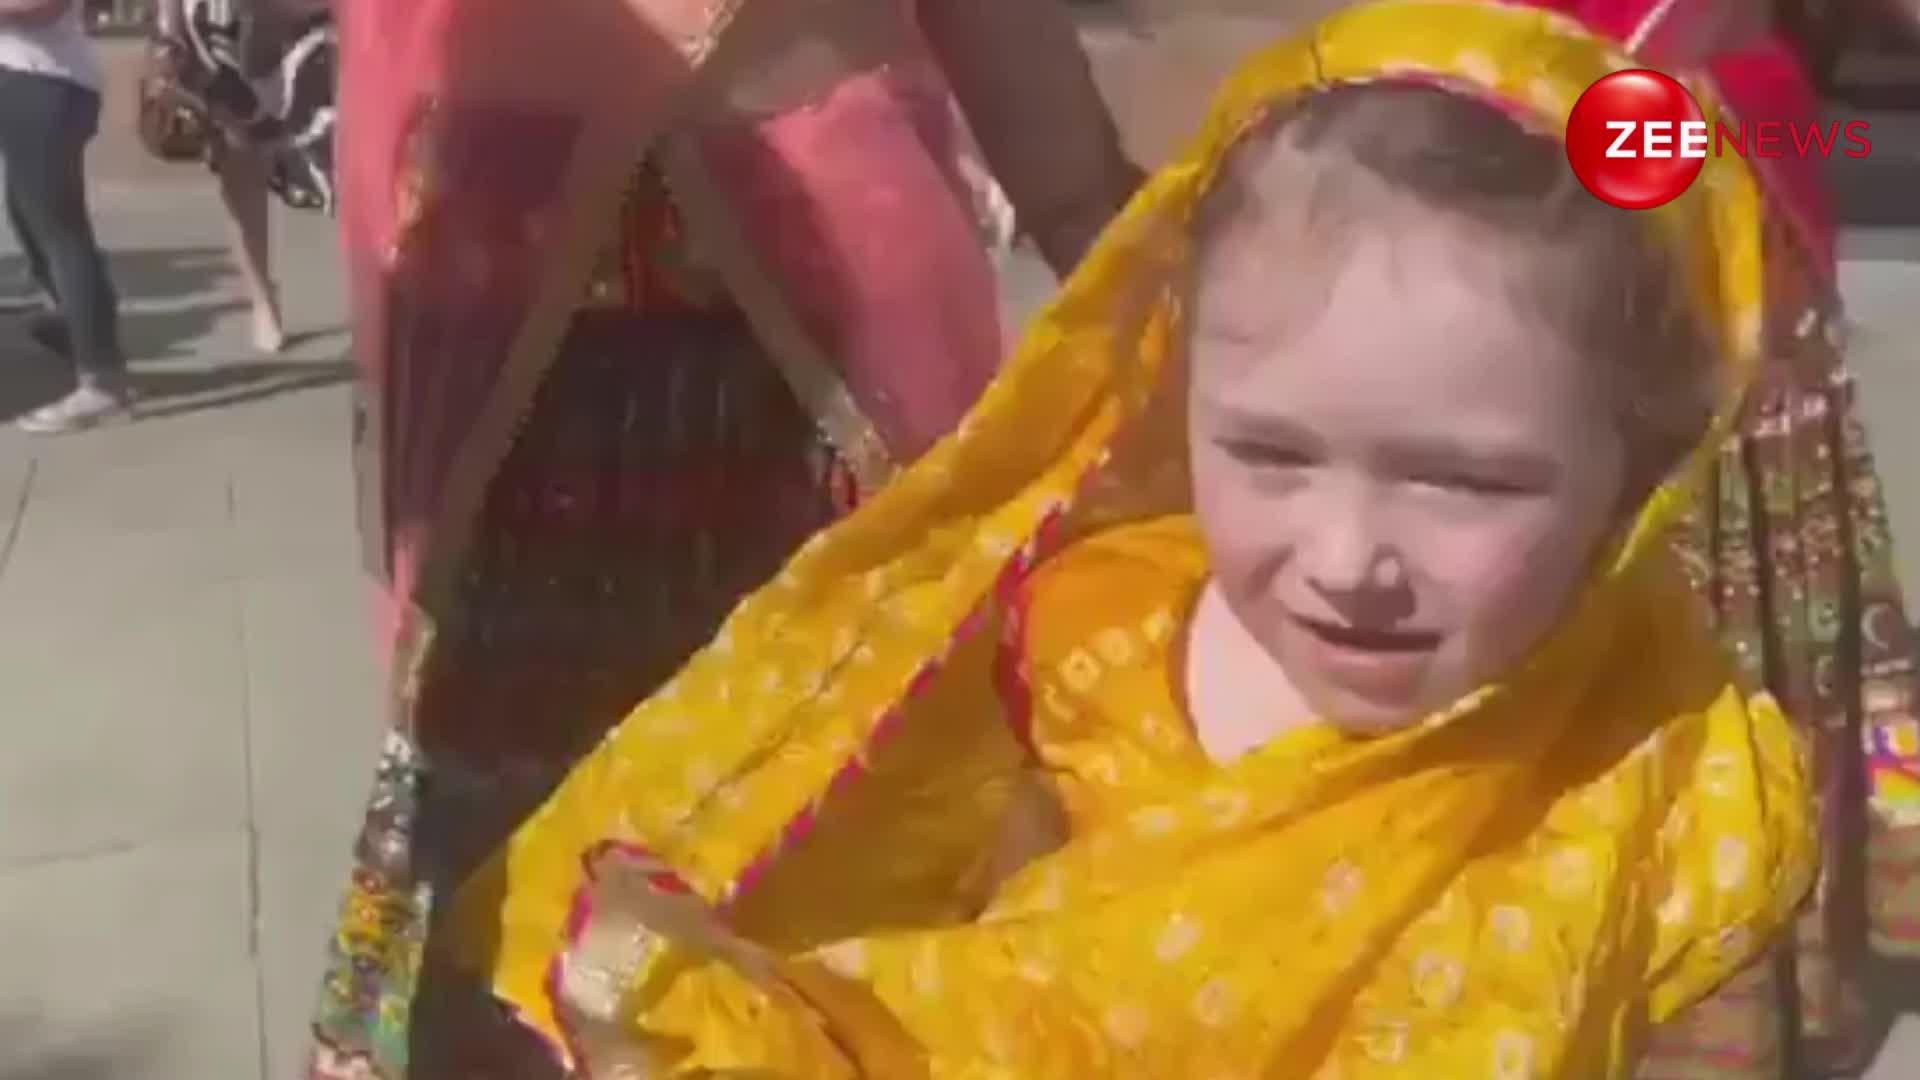 पीएम मोदी के स्वागत में इंडियन कपड़े पहन ढोल पर भांगड़ा करते दिखी छोटी सी रशियन बच्ची, देख हैरान रह गए लोग